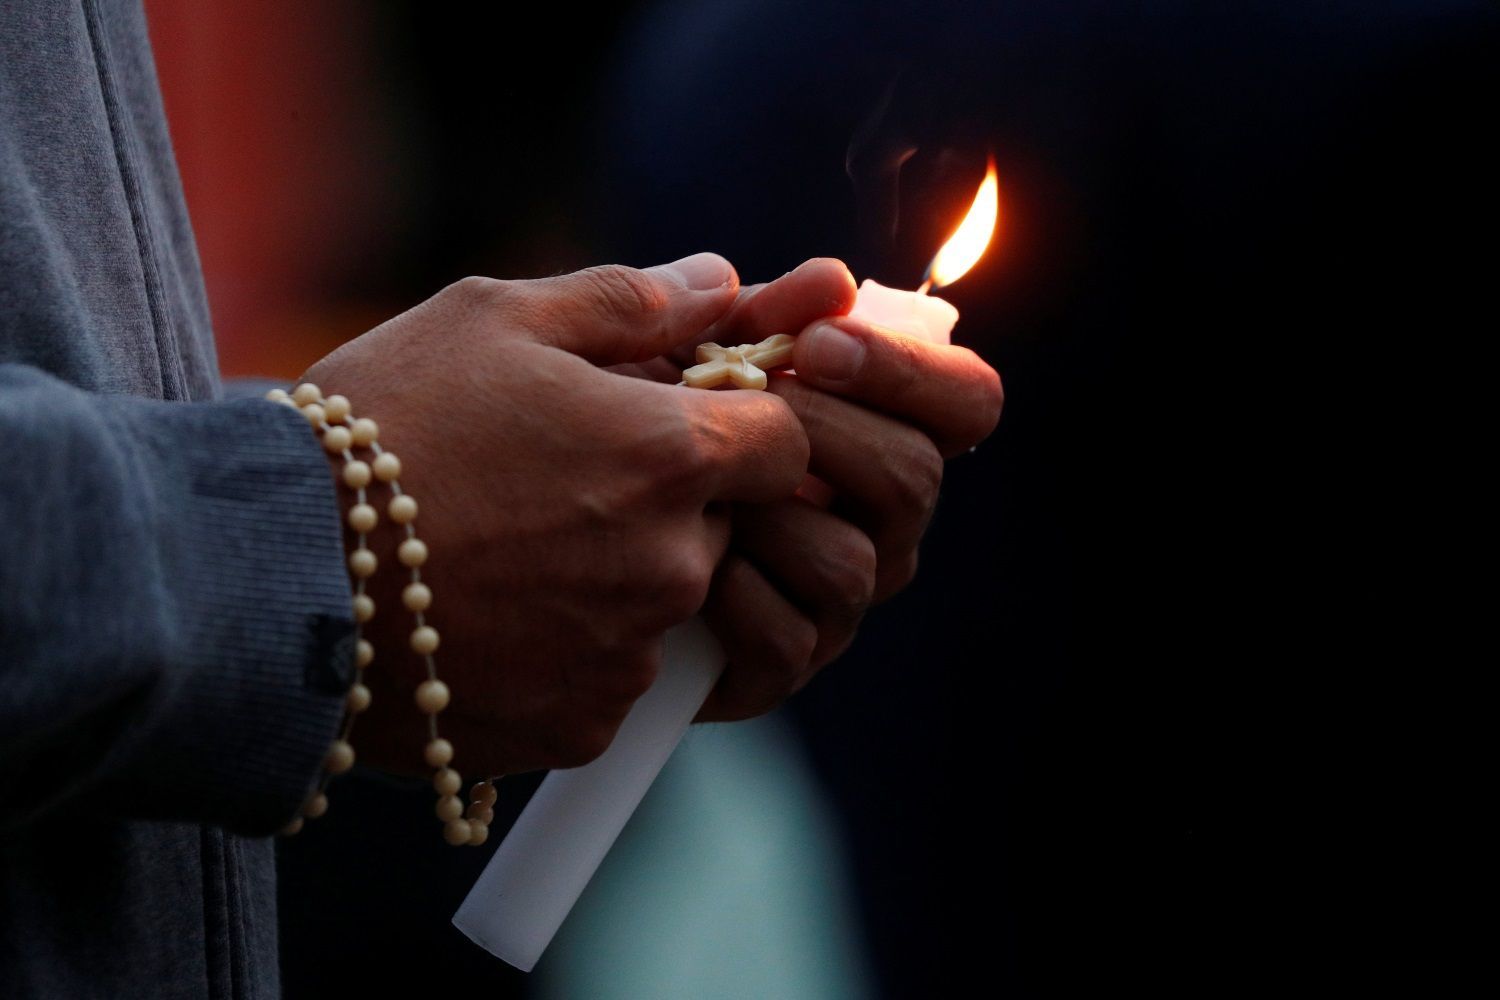 Nový Zéland den po střelbě na mešity smutek pohřeb